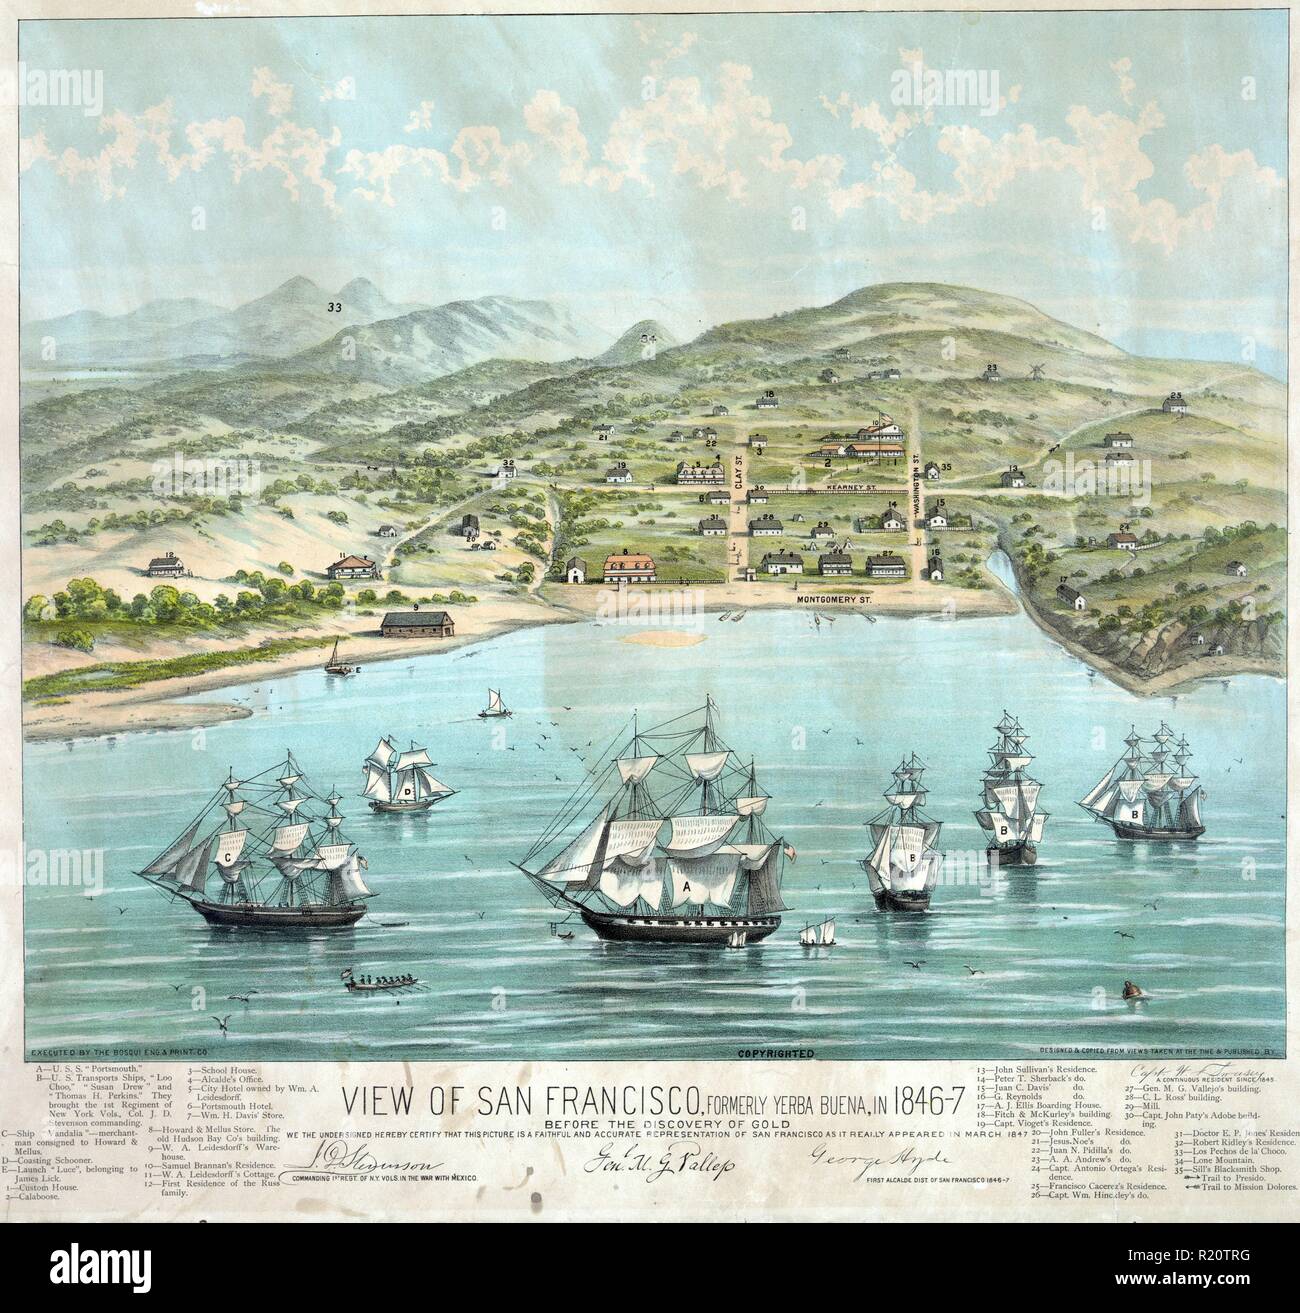 Impression couleur de San Francisco, Yerba Buena officiellement pendant les années 1840, avant la découverte de l'or. Datée de 1884 Banque D'Images